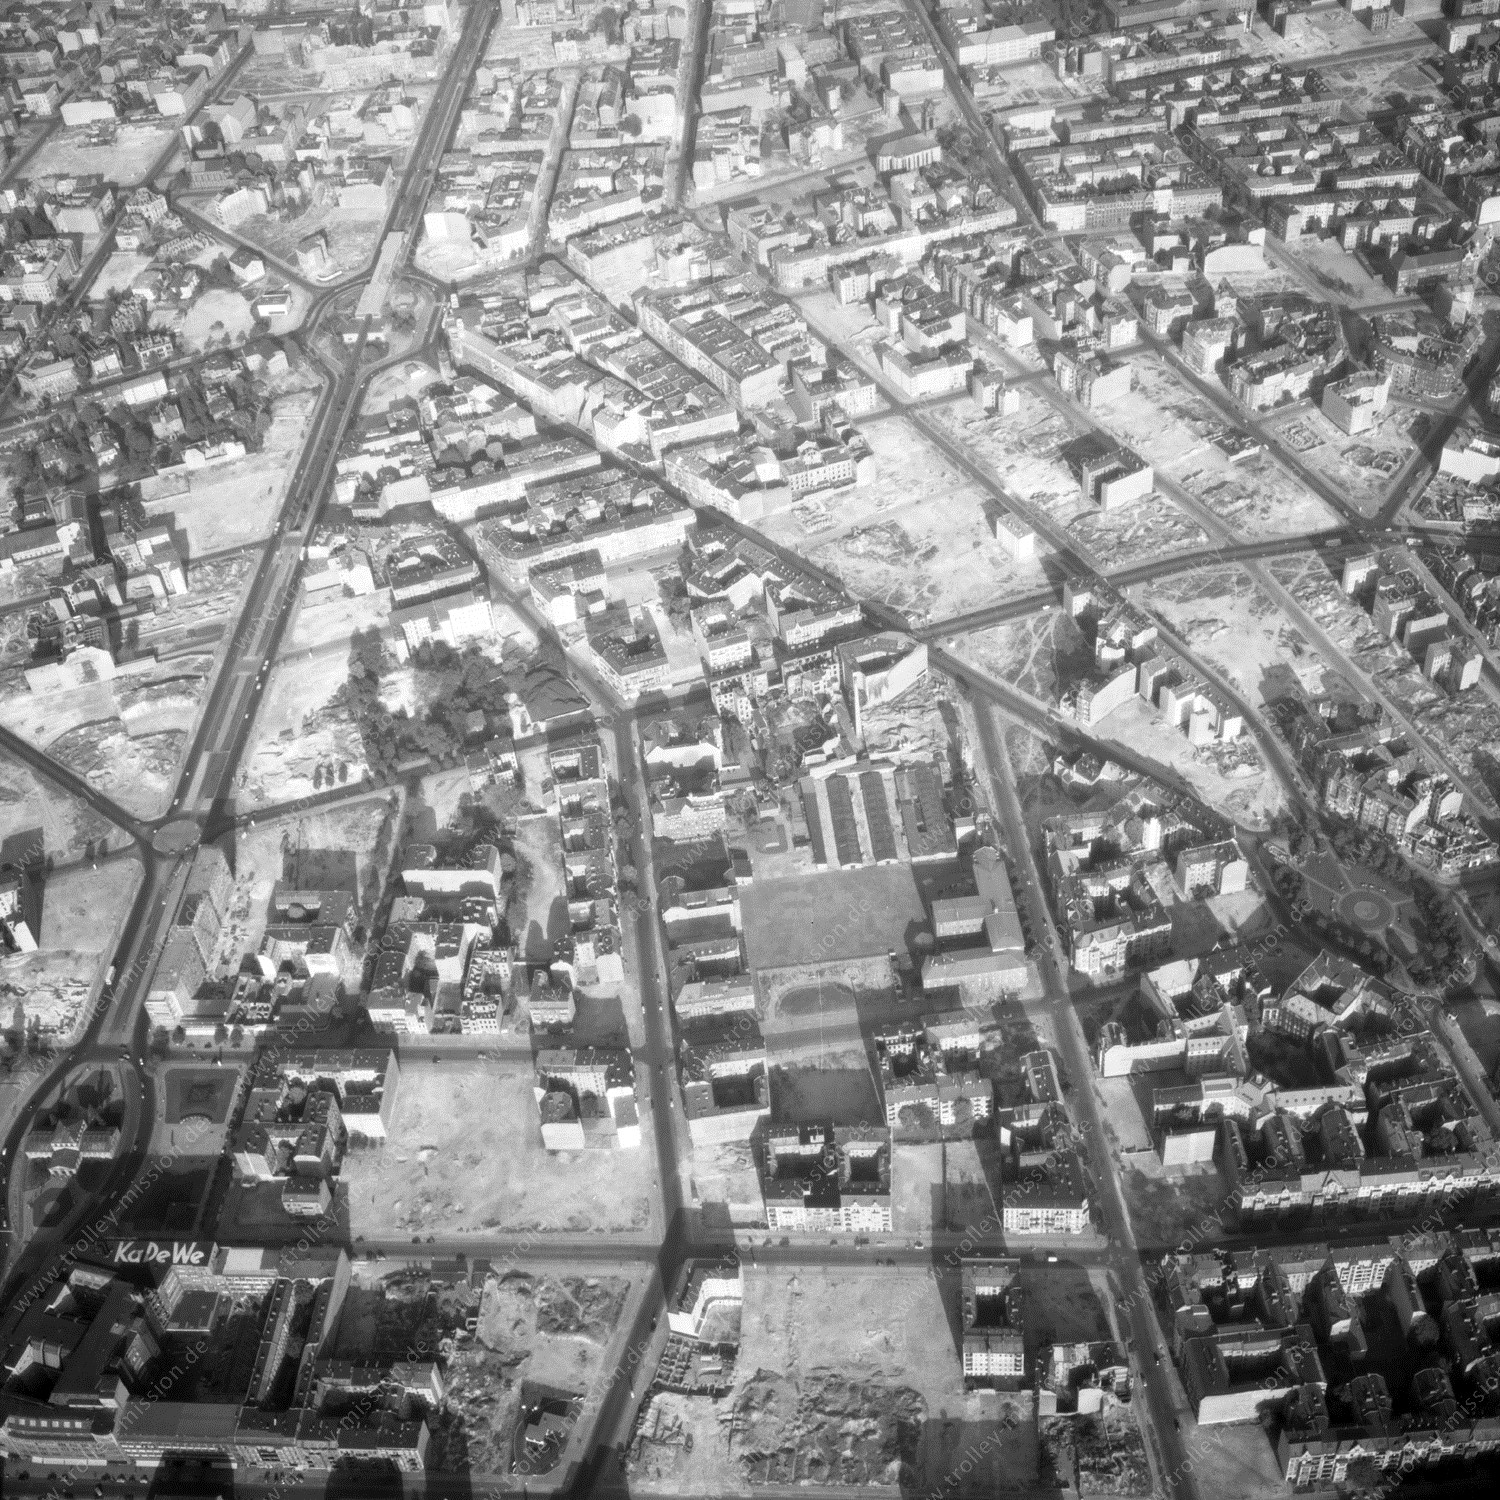 Alte Fotos und Luftbilder von Berlin - Luftbildaufnahme Nr. 08 - Historische Luftaufnahmen von West-Berlin aus dem Jahr 1954 - Flugstrecke Foxtrot